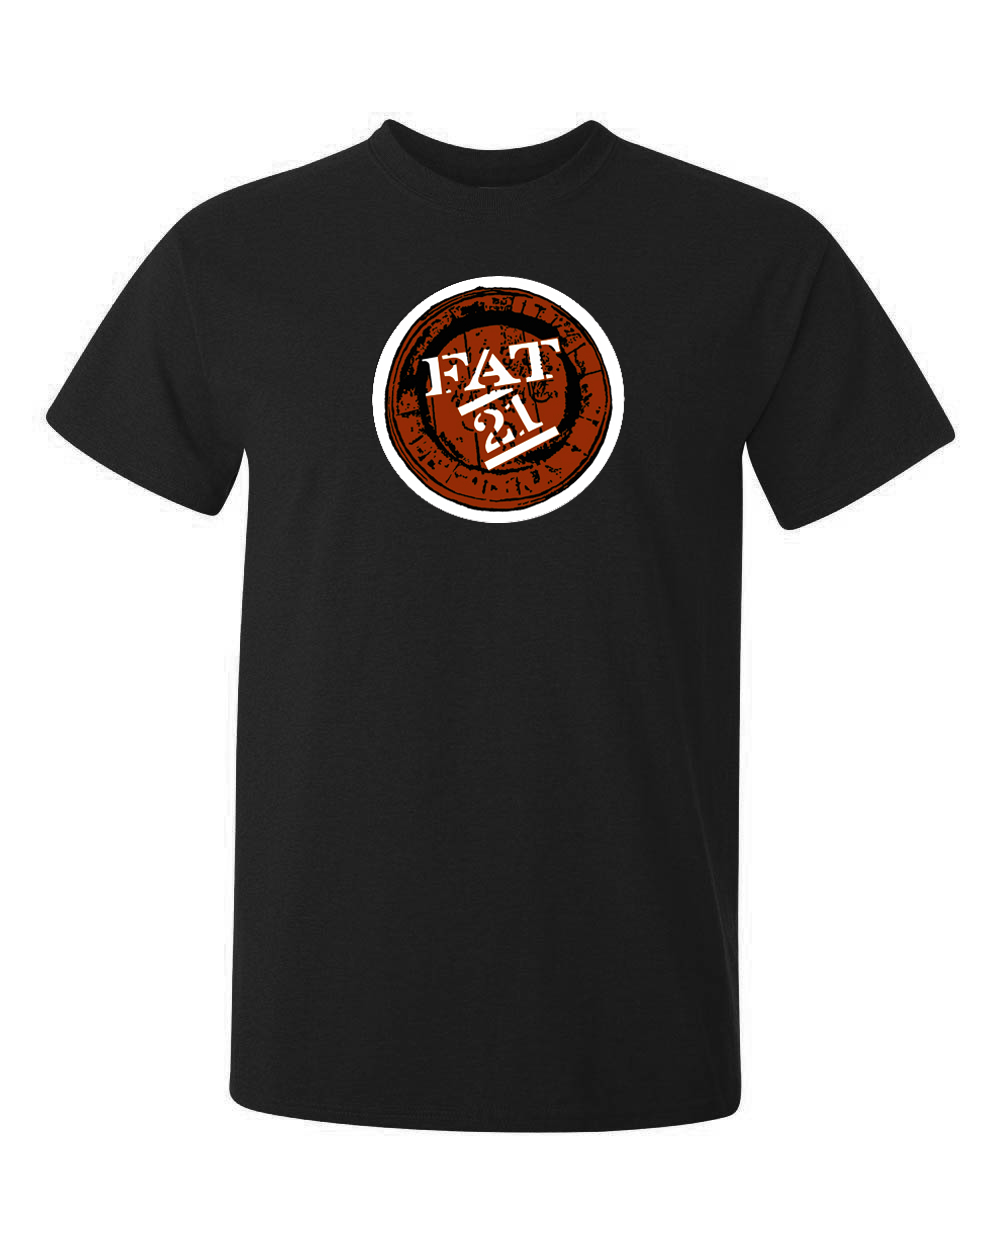 FAT21 logga tryckt på en t-shirt i svart eller brunt. tröjan är av hög kvalitet.